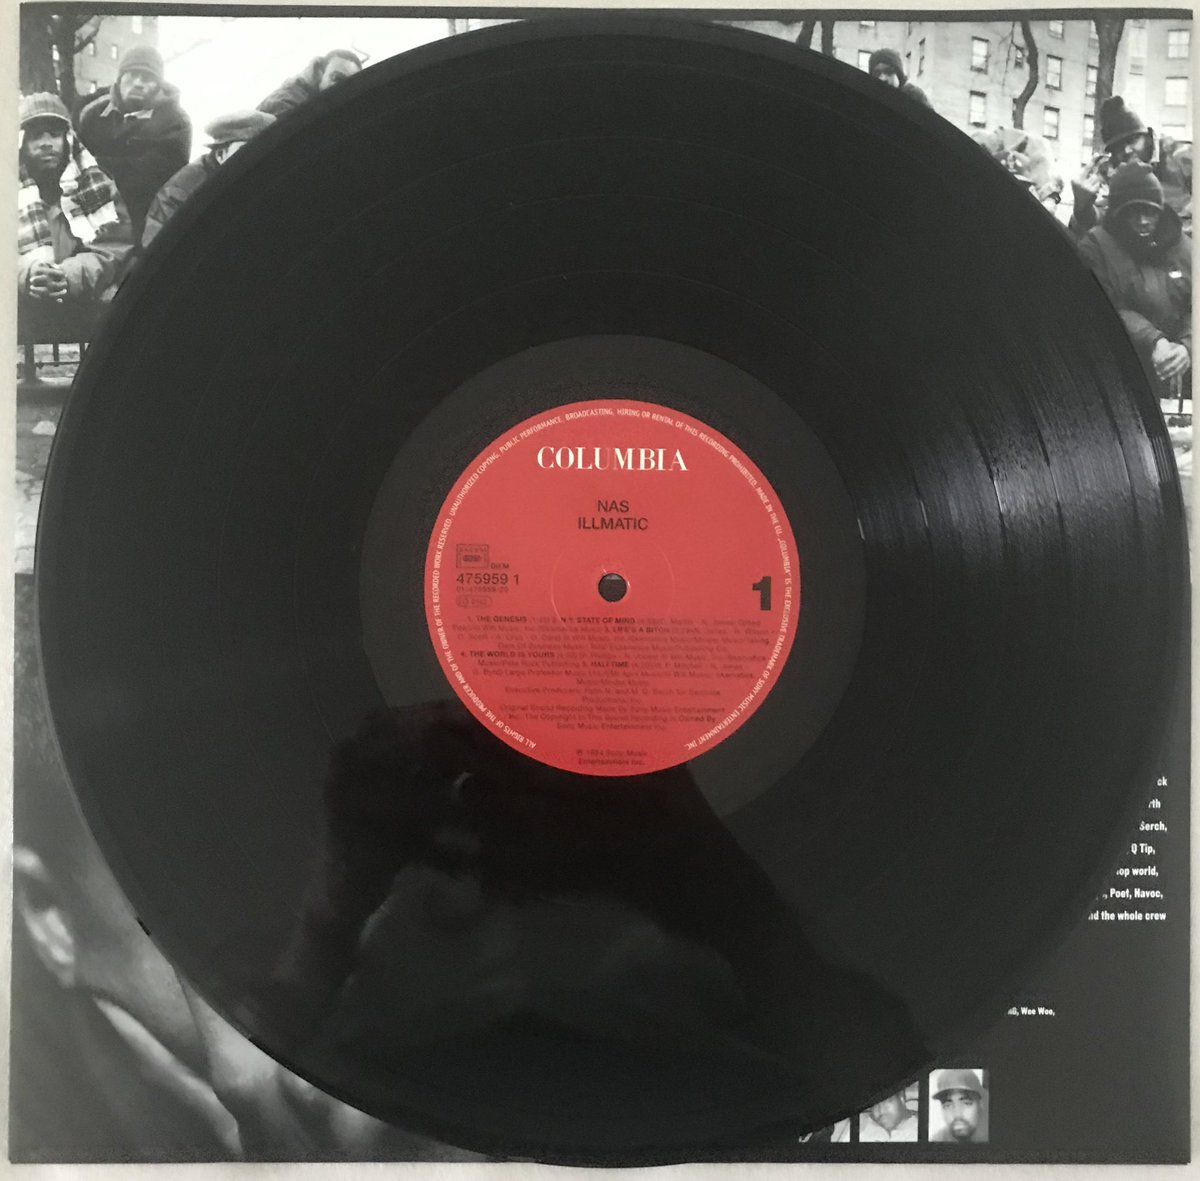 Nas - IllmaticIncludes:Illmatic (LP)Rating: 10/10